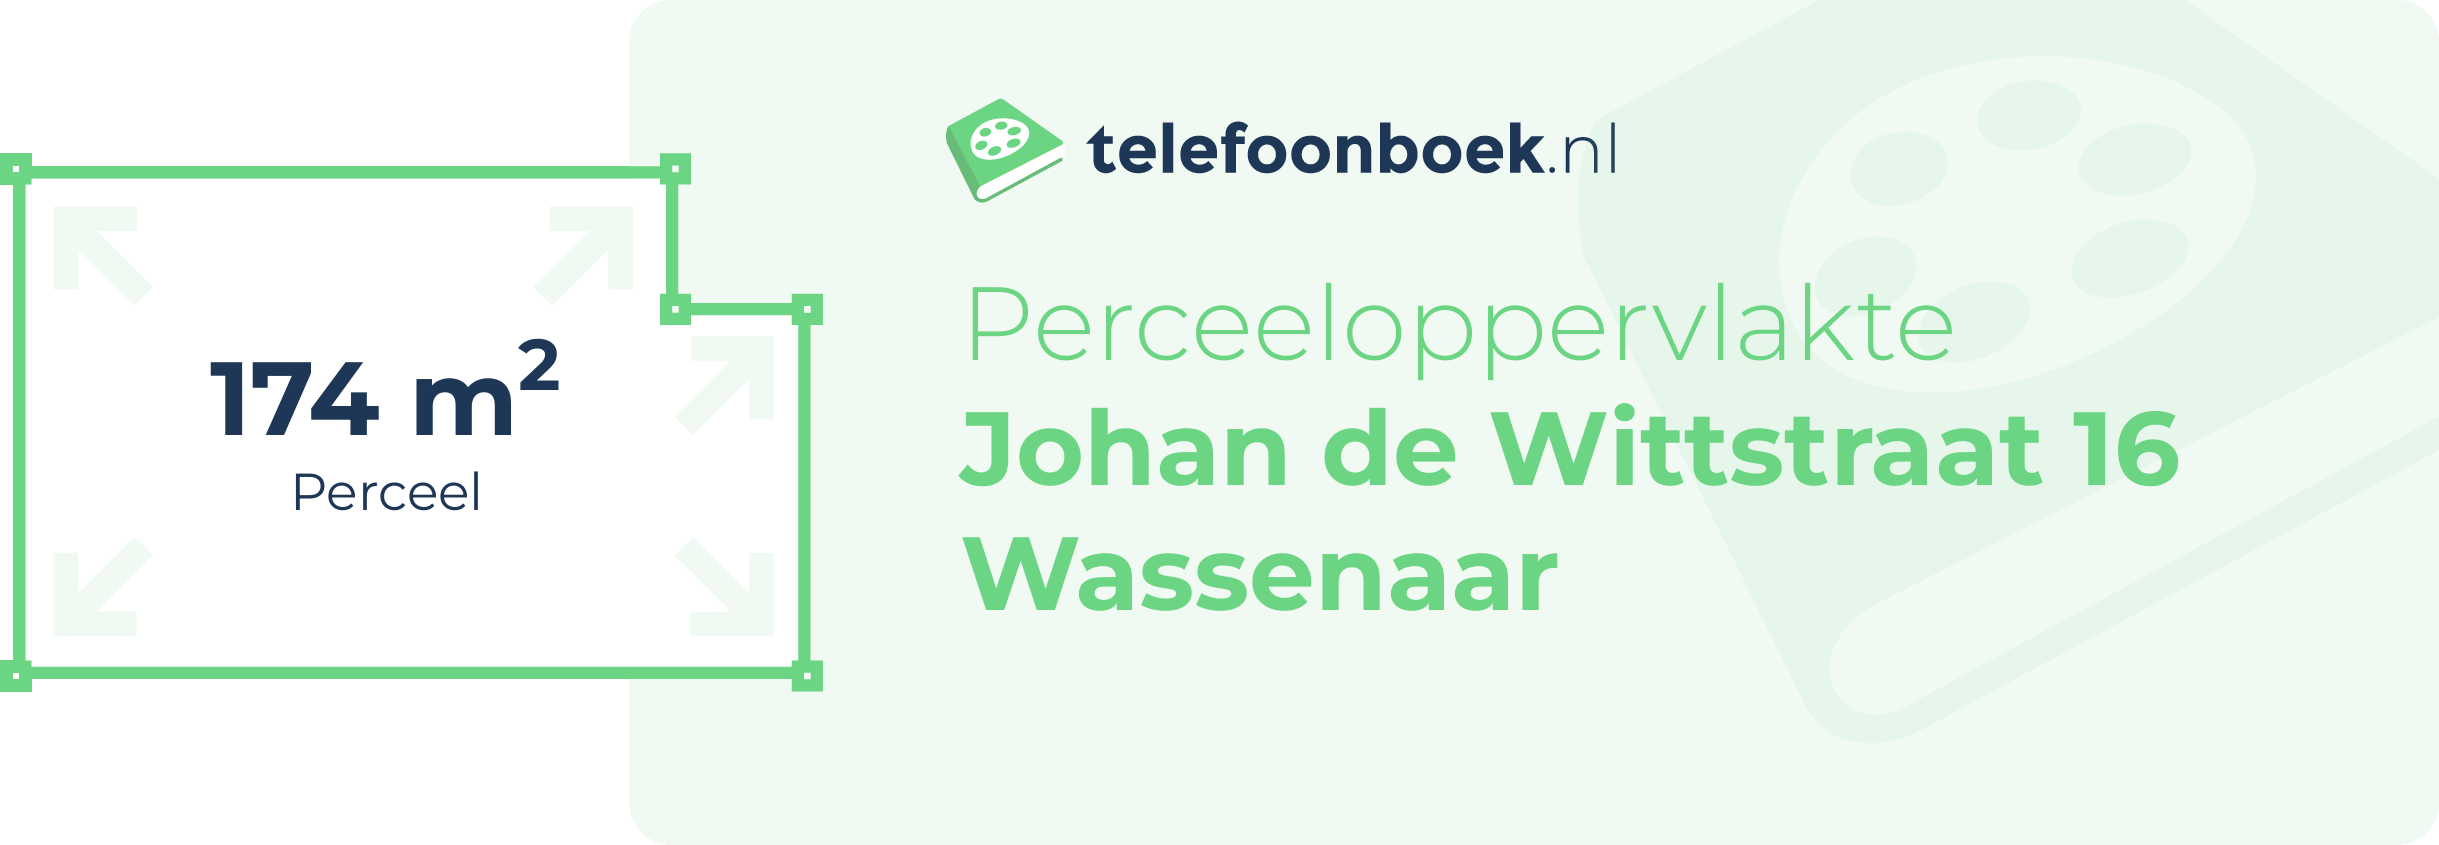 Perceeloppervlakte Johan De Wittstraat 16 Wassenaar